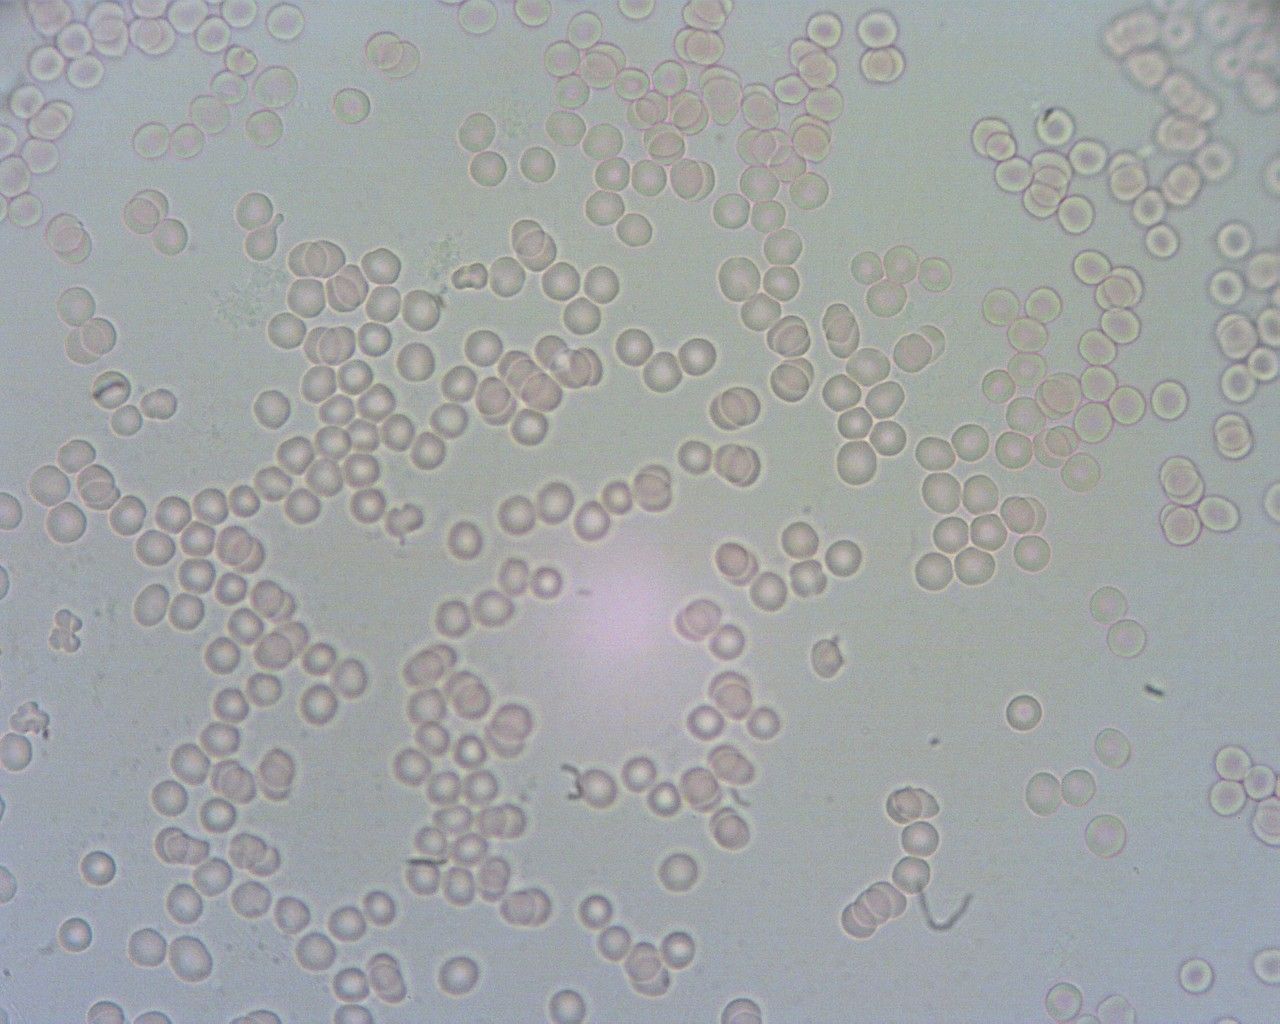 Zdjęcie krwinek spod mikroskopu. Widać niedożywione krwinki.